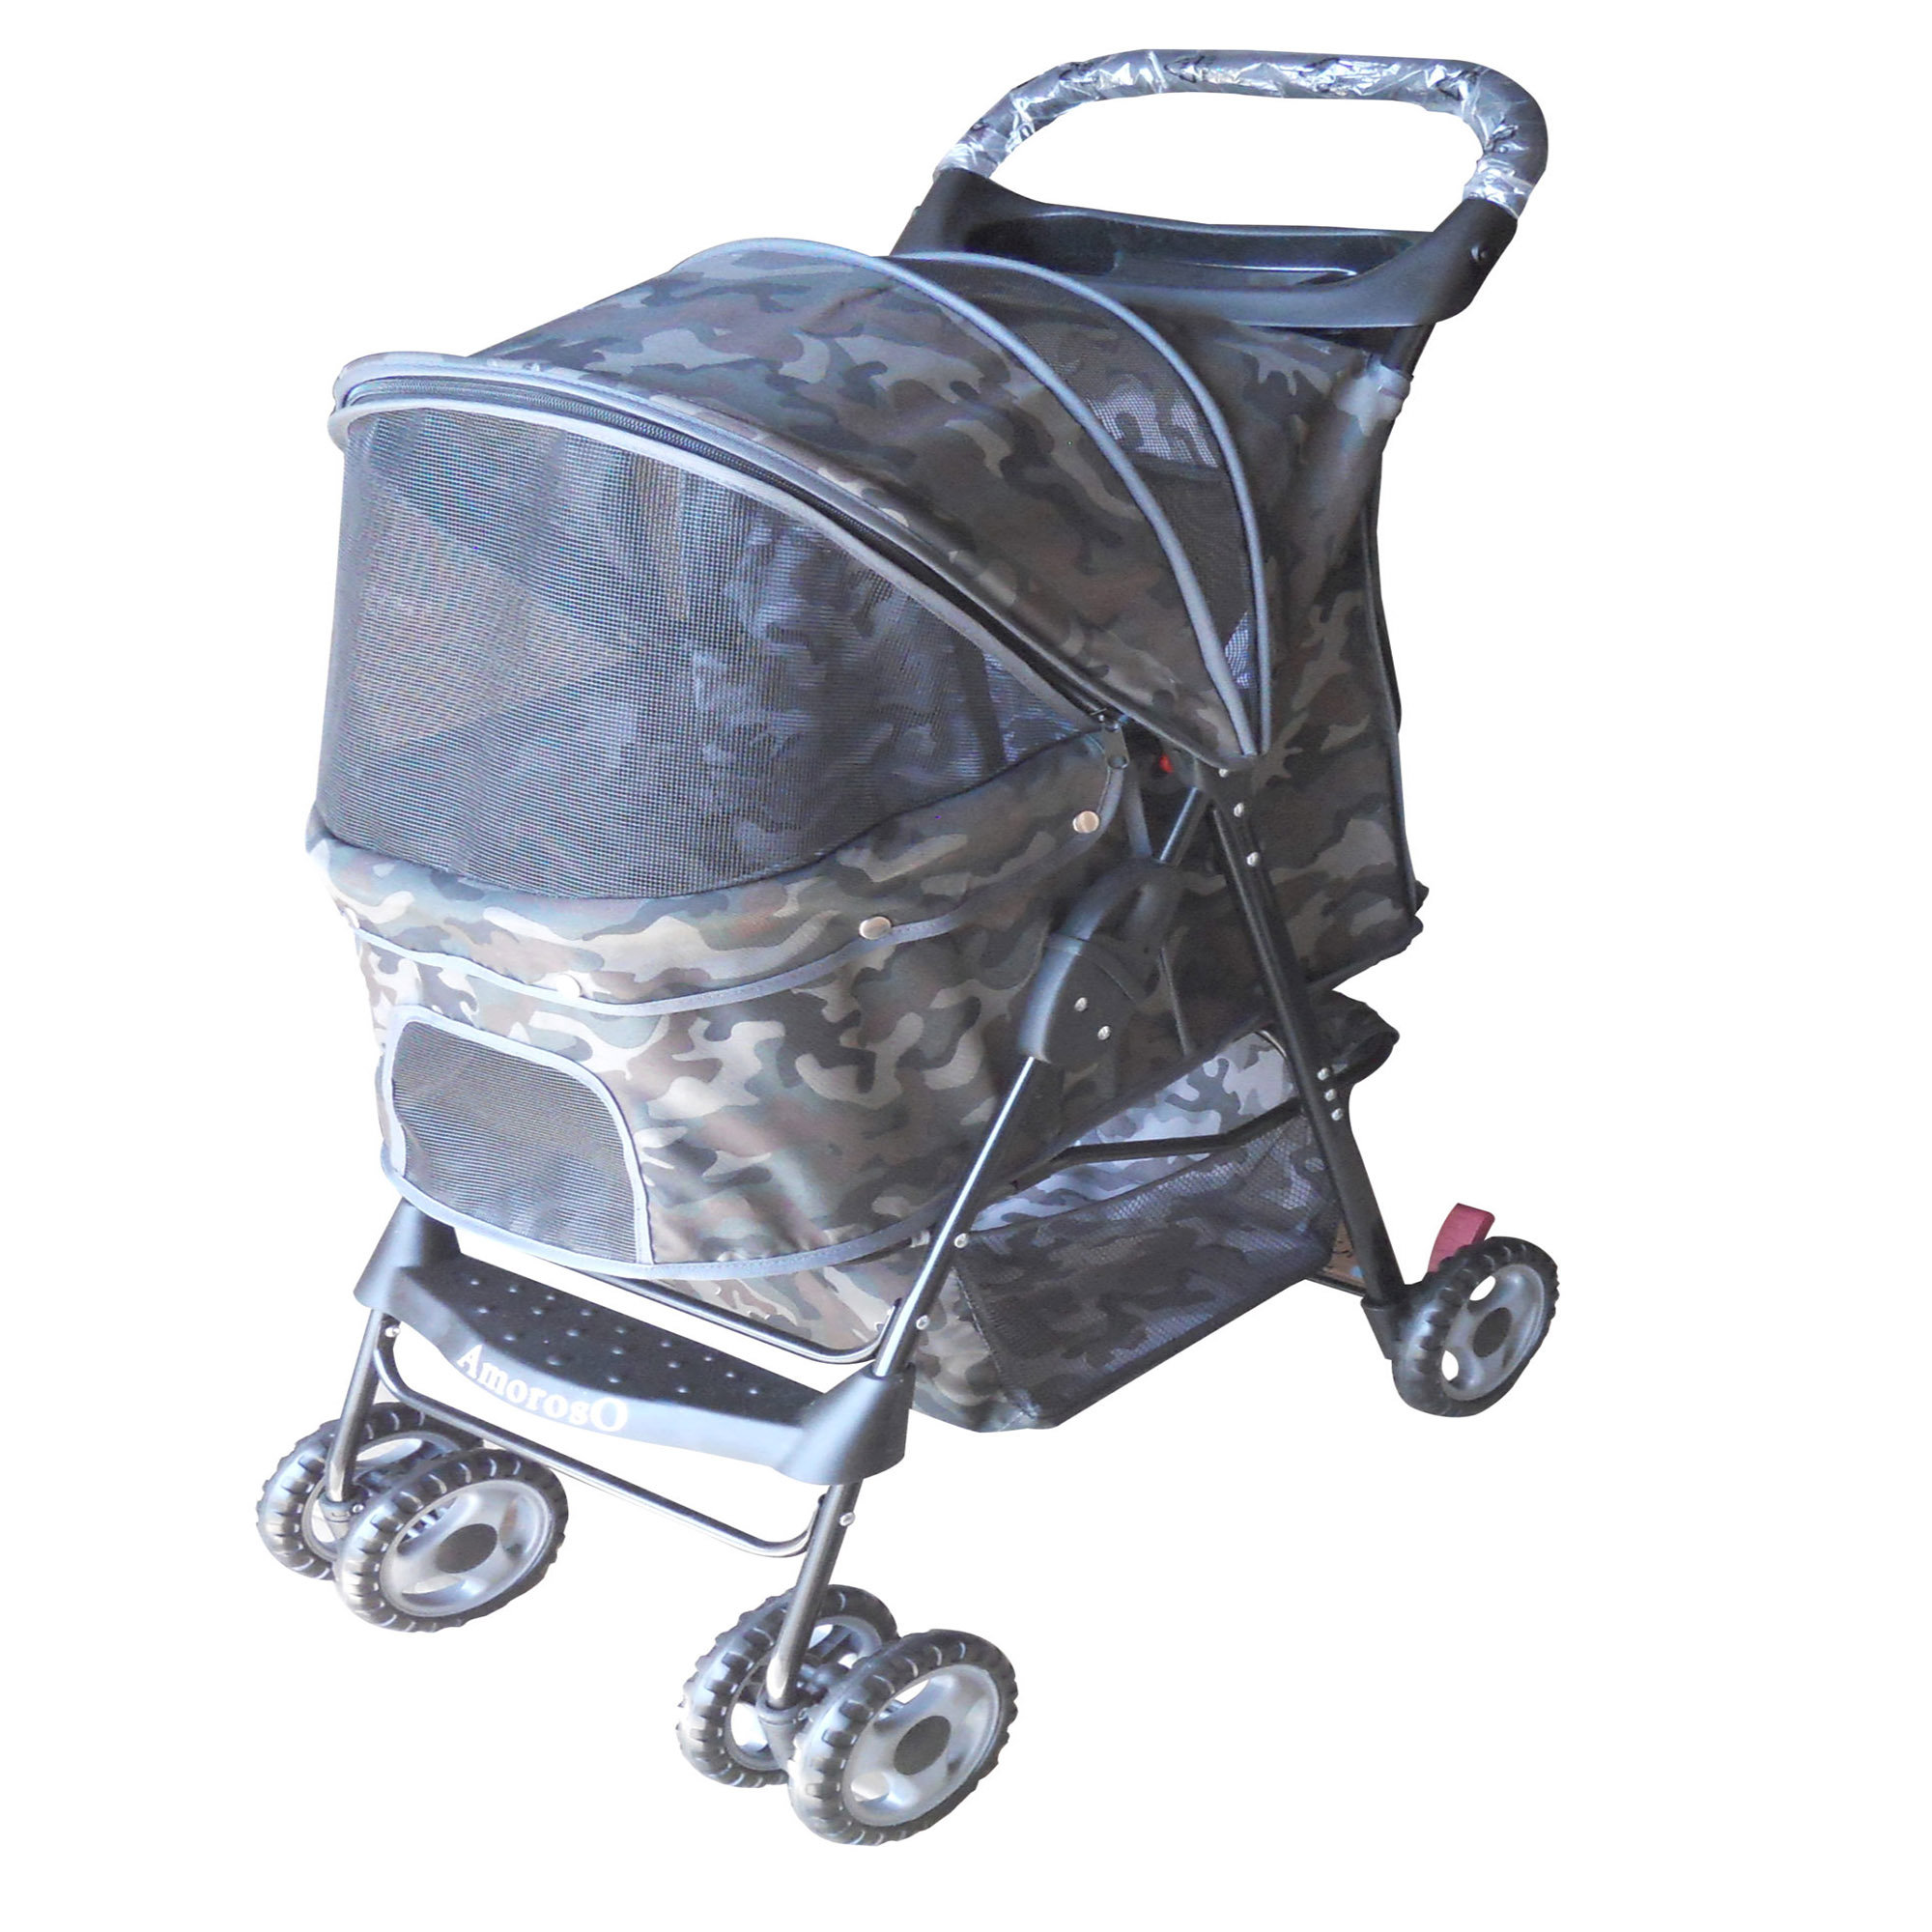 AmorosO Foldable Pet Stroller - Wayfair Canada